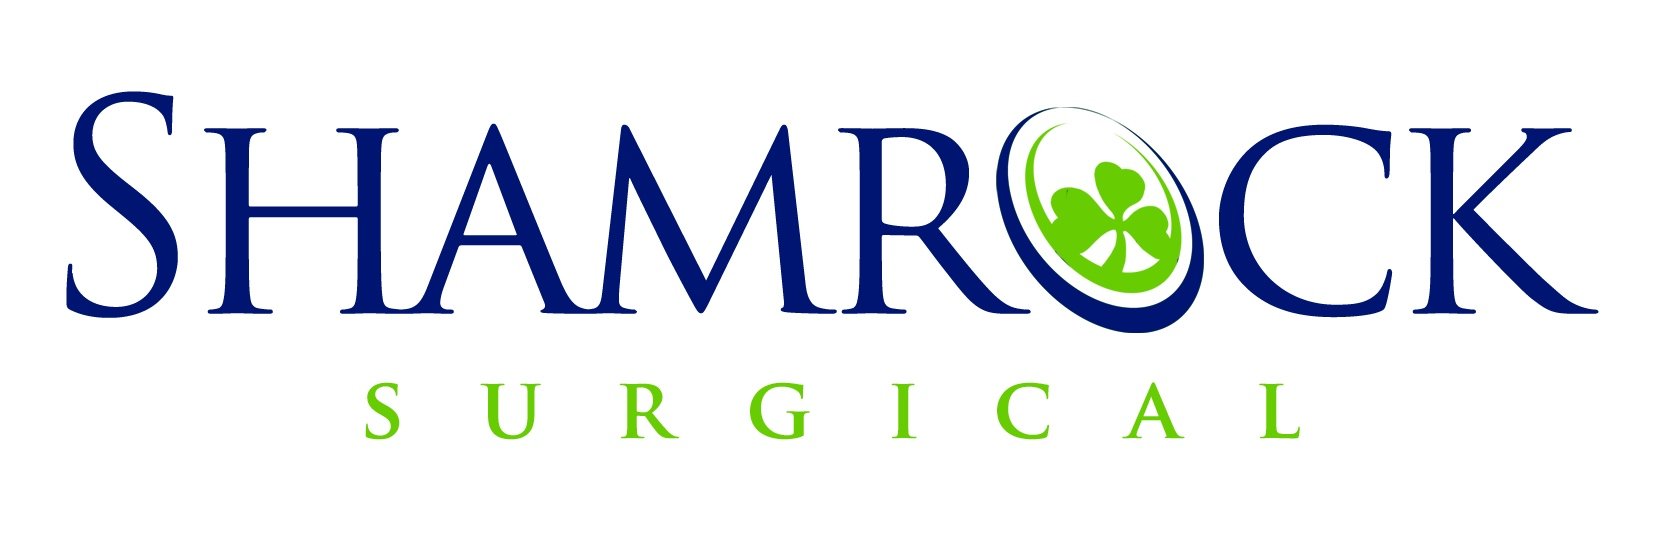 Shamrock-Logo-as-Smart-Object-1.jpg